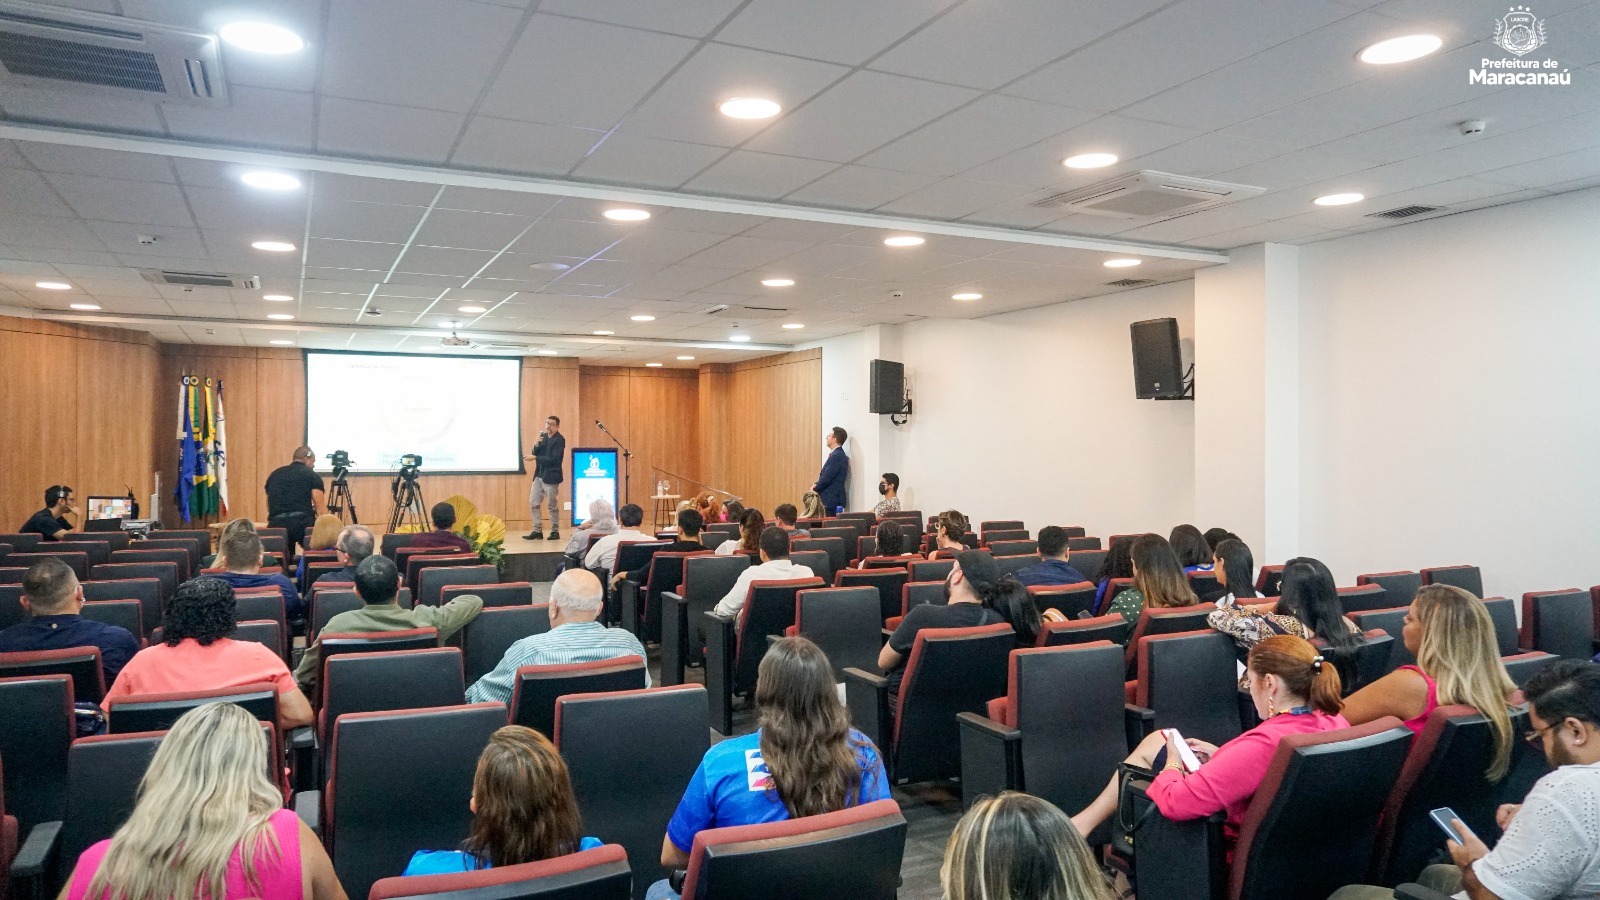 No momento você está vendo Maracanaú participa da II Semana do Profissional de Eventos